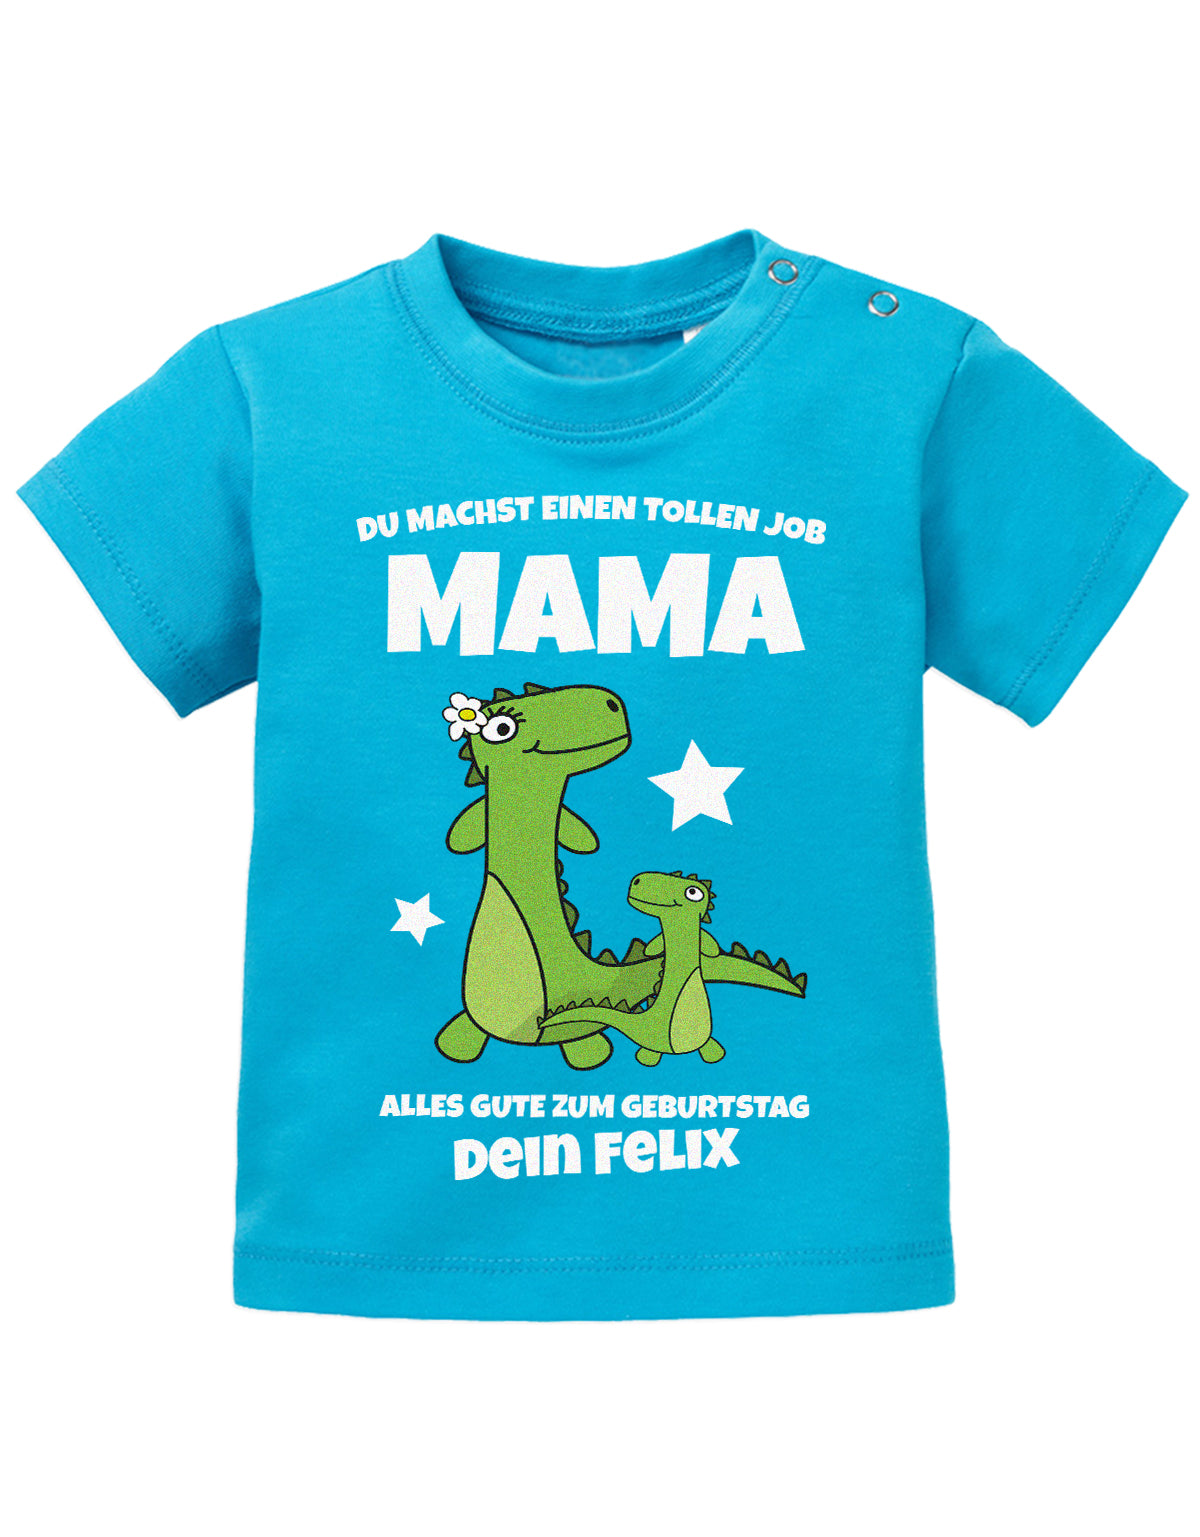 Mama Spruch Baby Shirt. Du machst einen tollen Job, Mama. Alles Gute zum Geburtstag. Personalisiert mit Namen. Blau